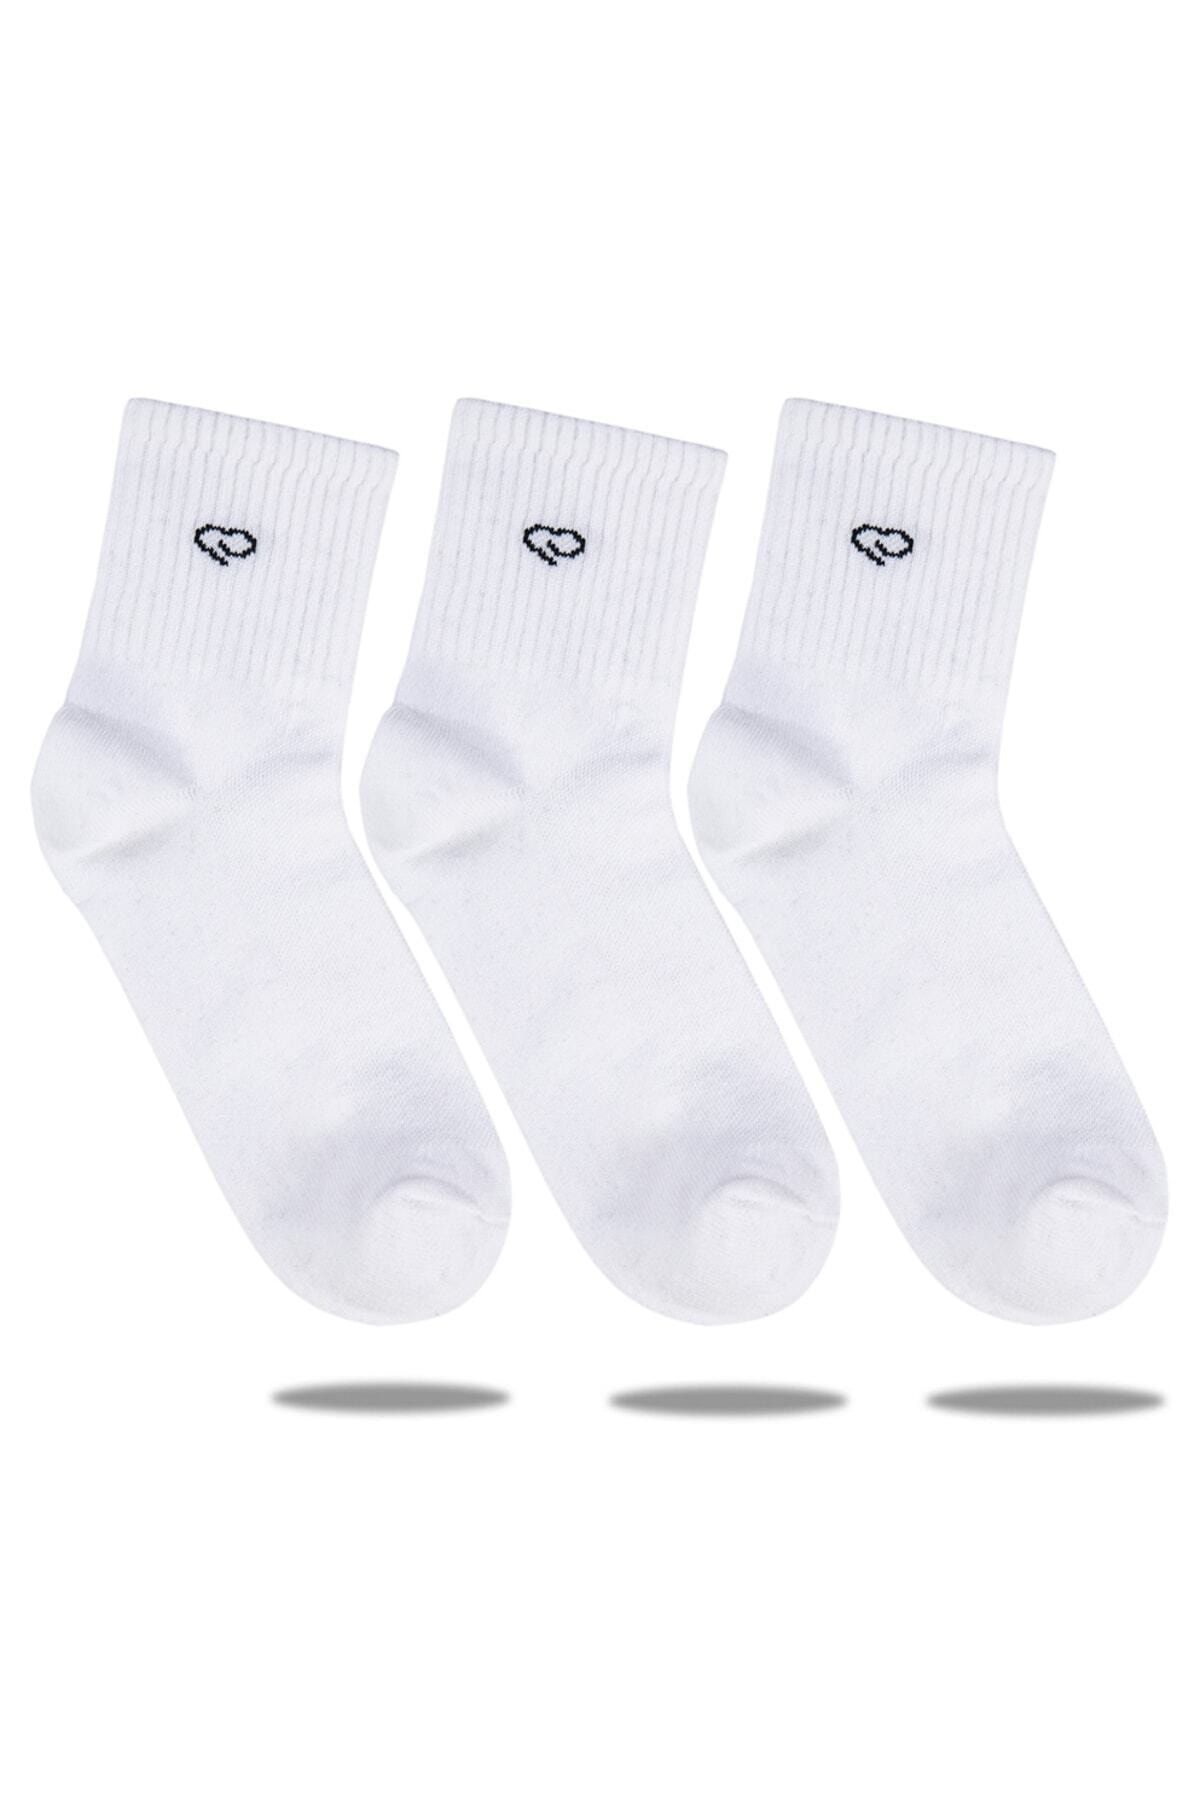 Ebru Şallı Beyaz Renk 3'lü Set Spor Çorap